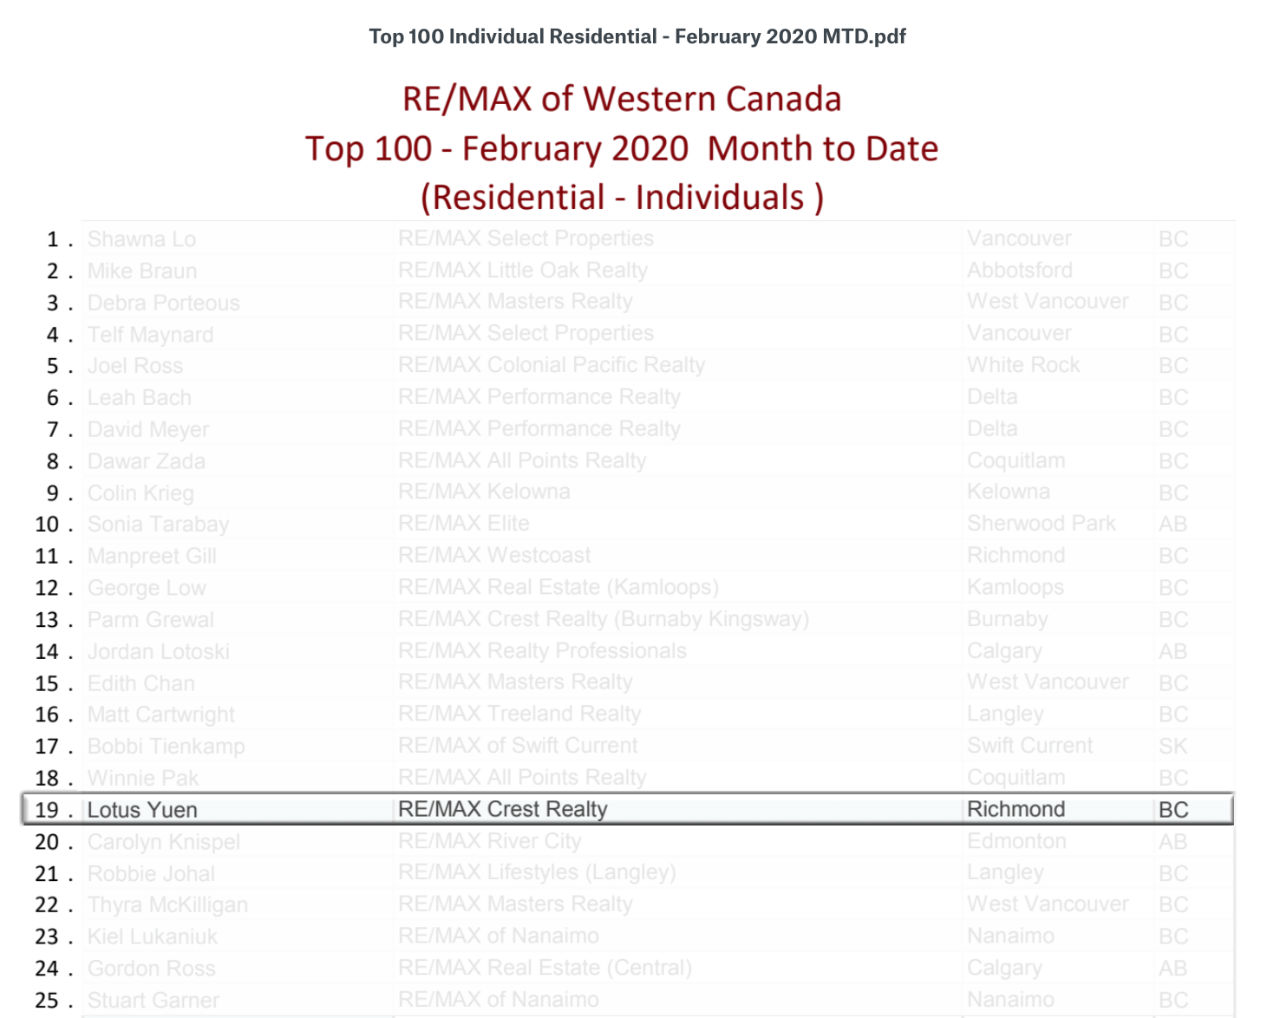 Top 100 Realtors of RE/MAX Western Canada in Feb 2020